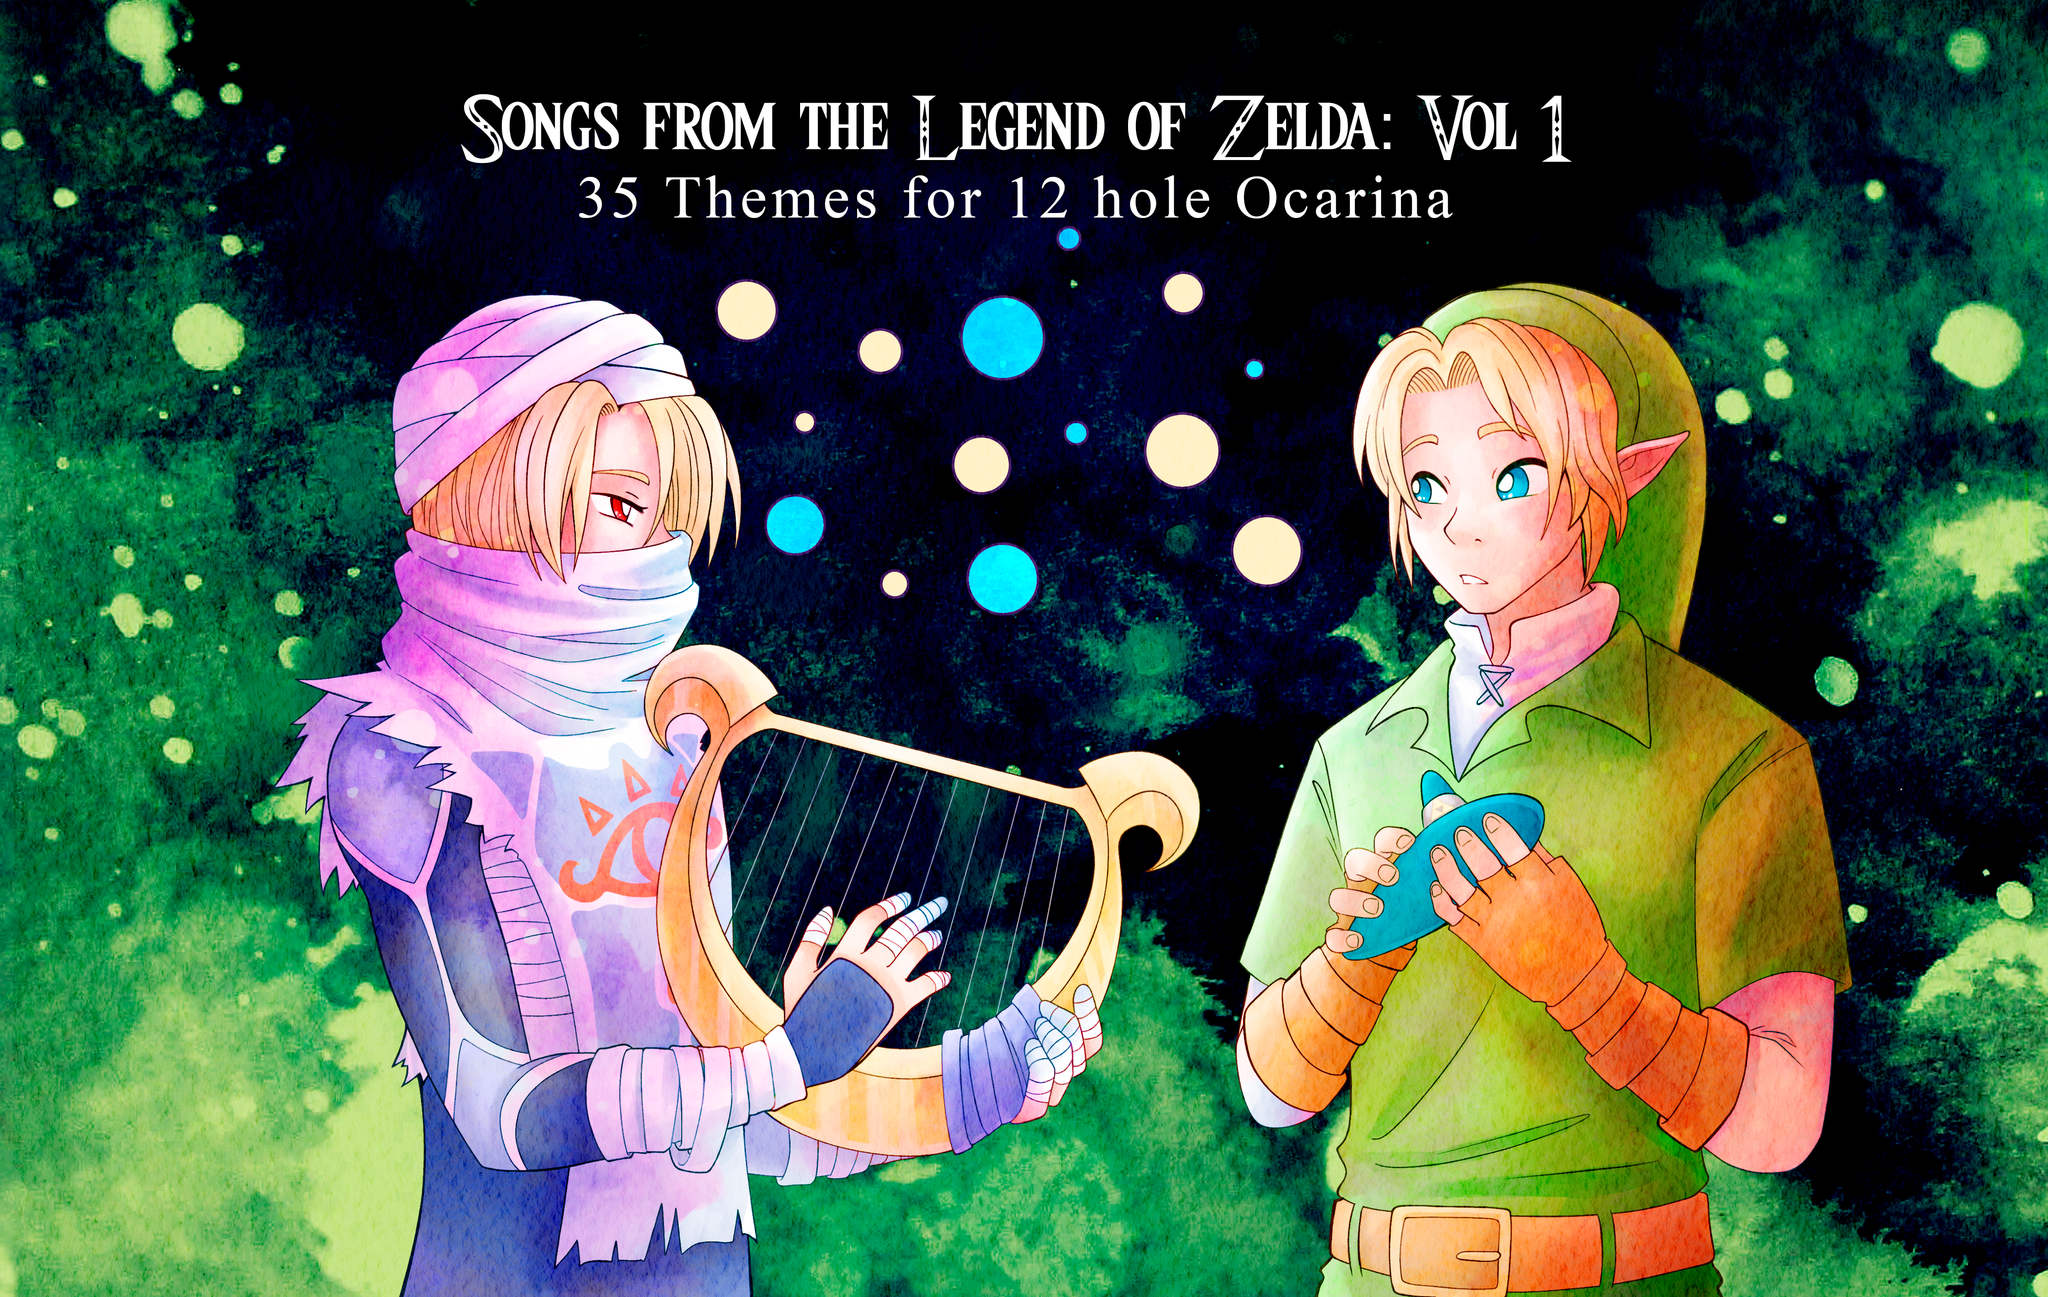 Link Ocarina Of Time Figure | Zelda Shop